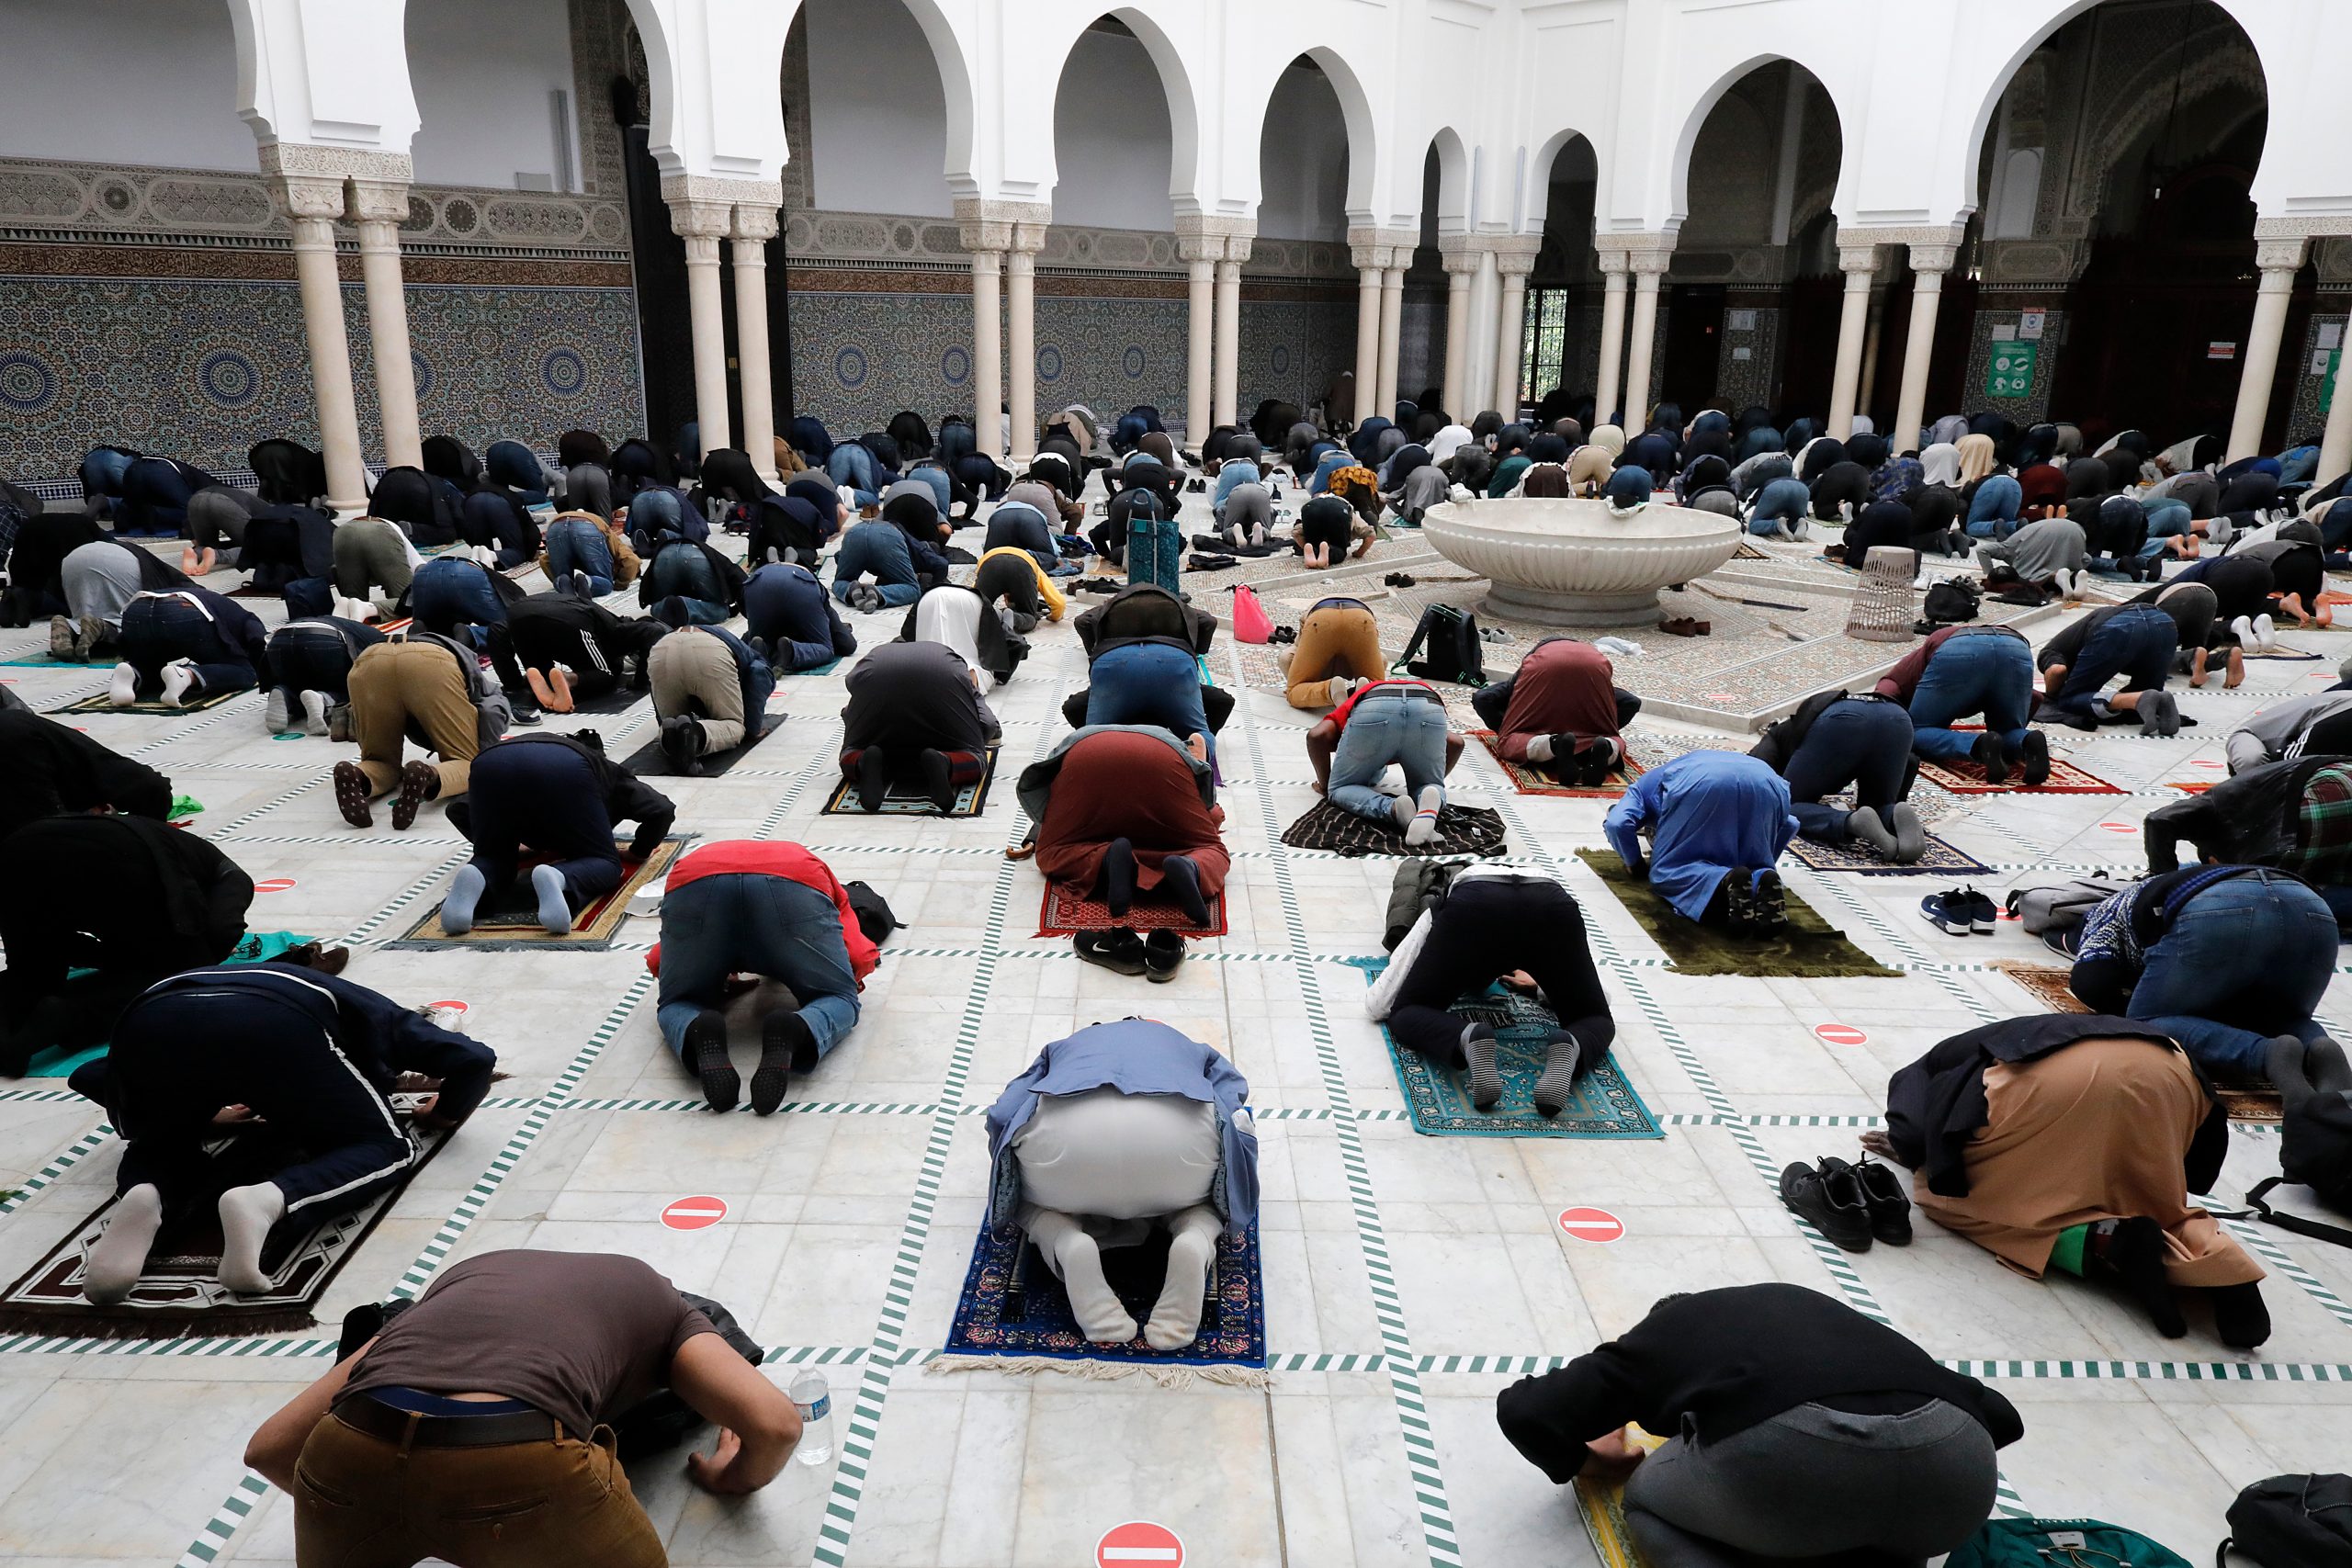 Bilde av personer som bøyer seg i bønn i en moske.